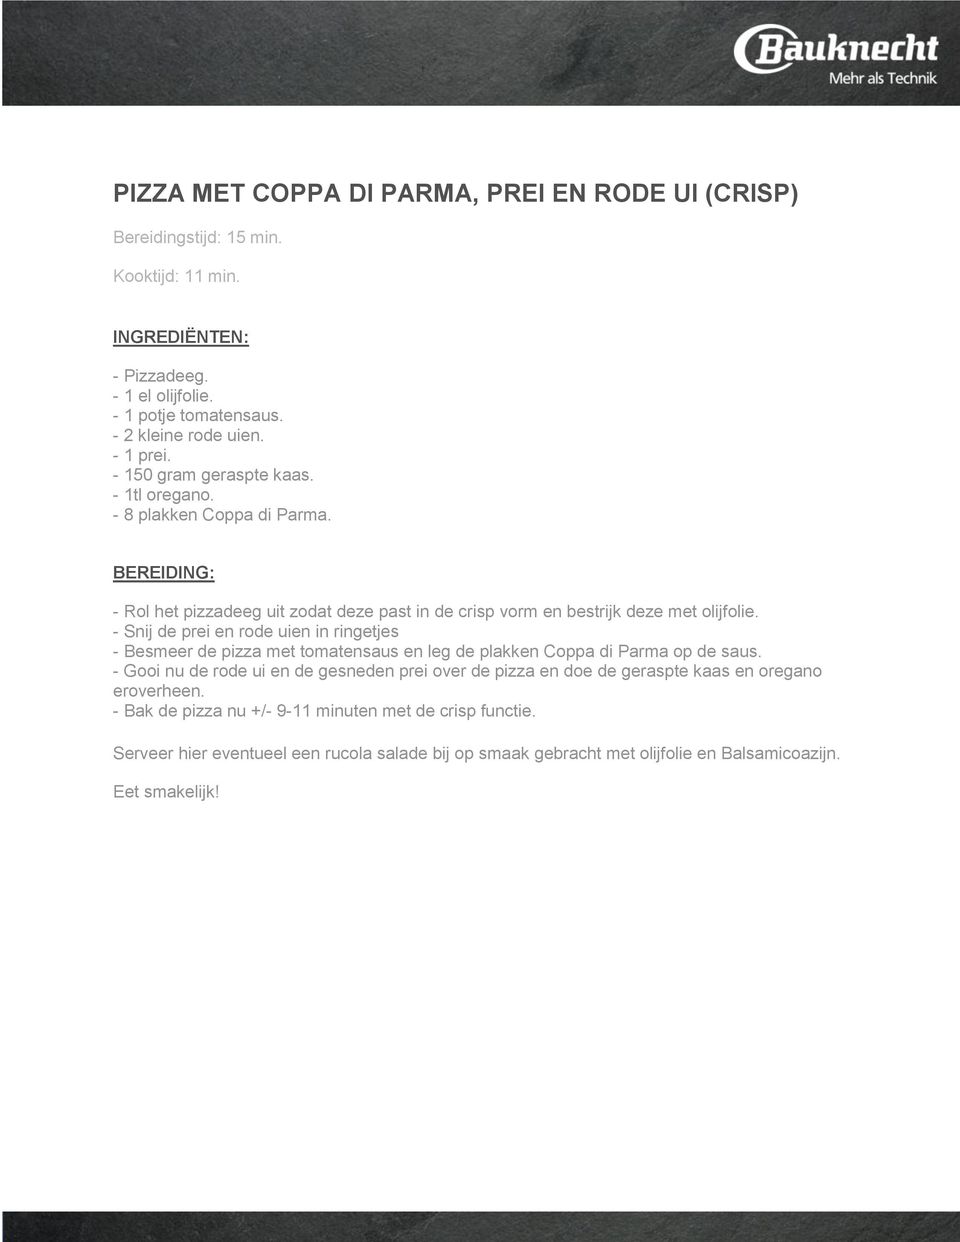 - Snij de prei en rode uien in ringetjes - Besmeer de pizza met tomatensaus en leg de plakken Coppa di Parma op de saus.